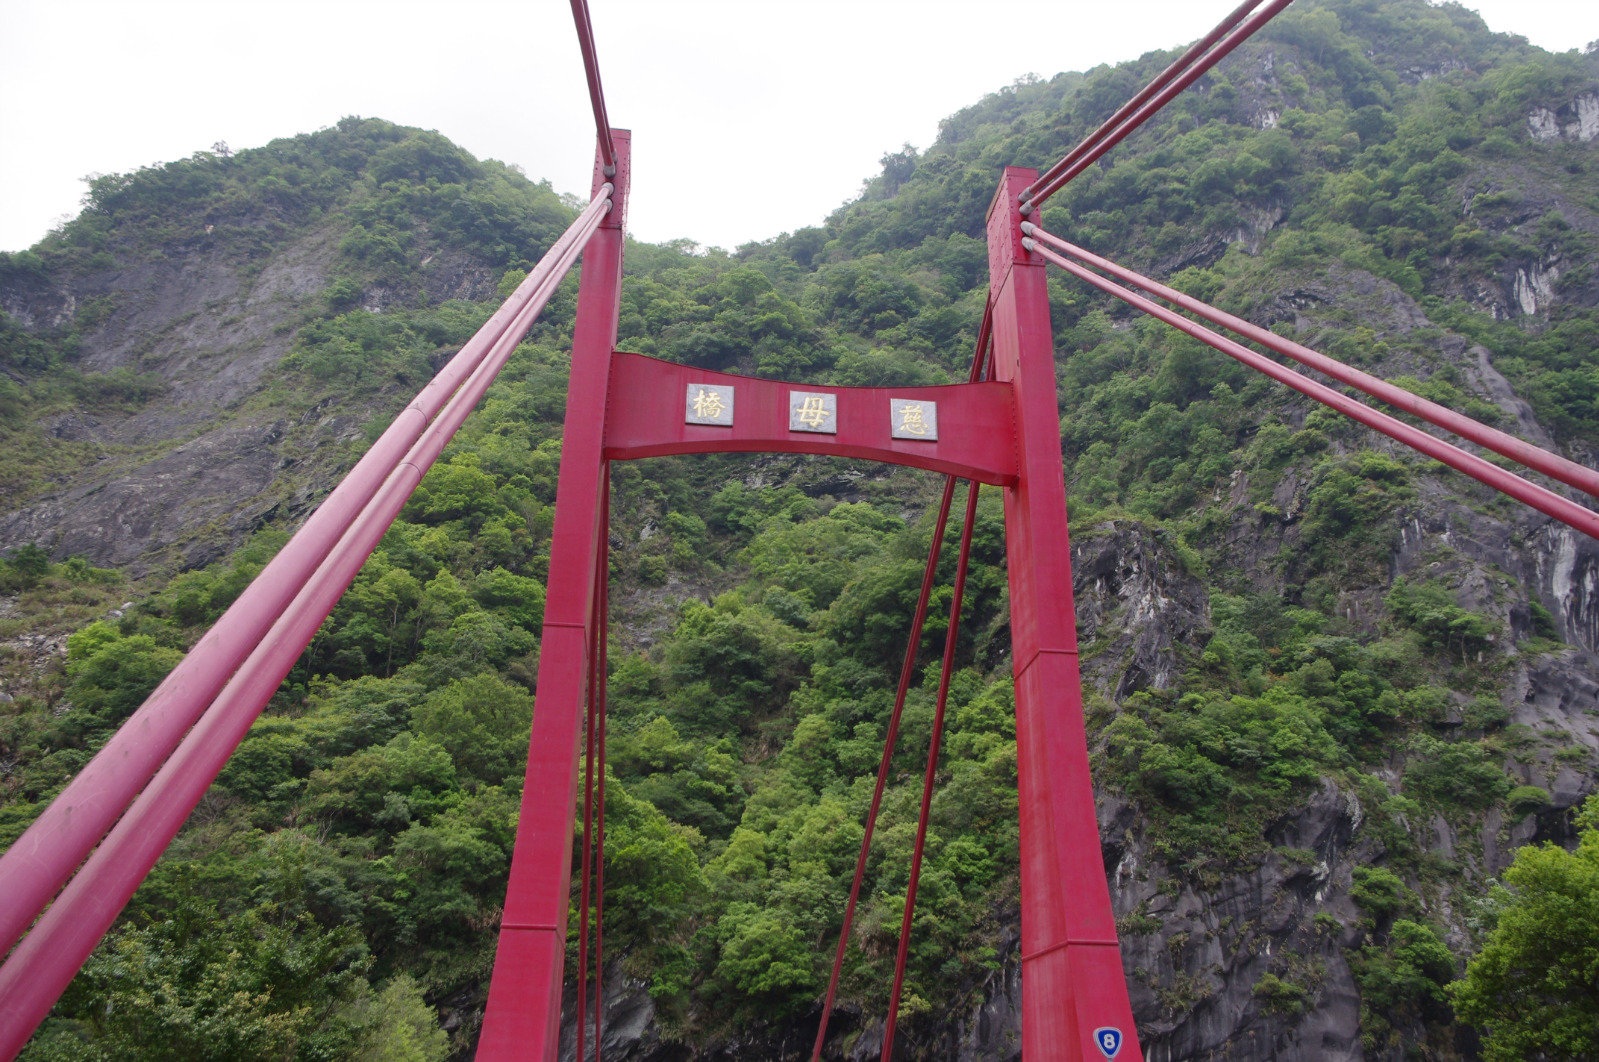 慈母桥在太鲁阁景区里面,桥身是钢筋混凝土桥,全部涂色刷成了红色,路